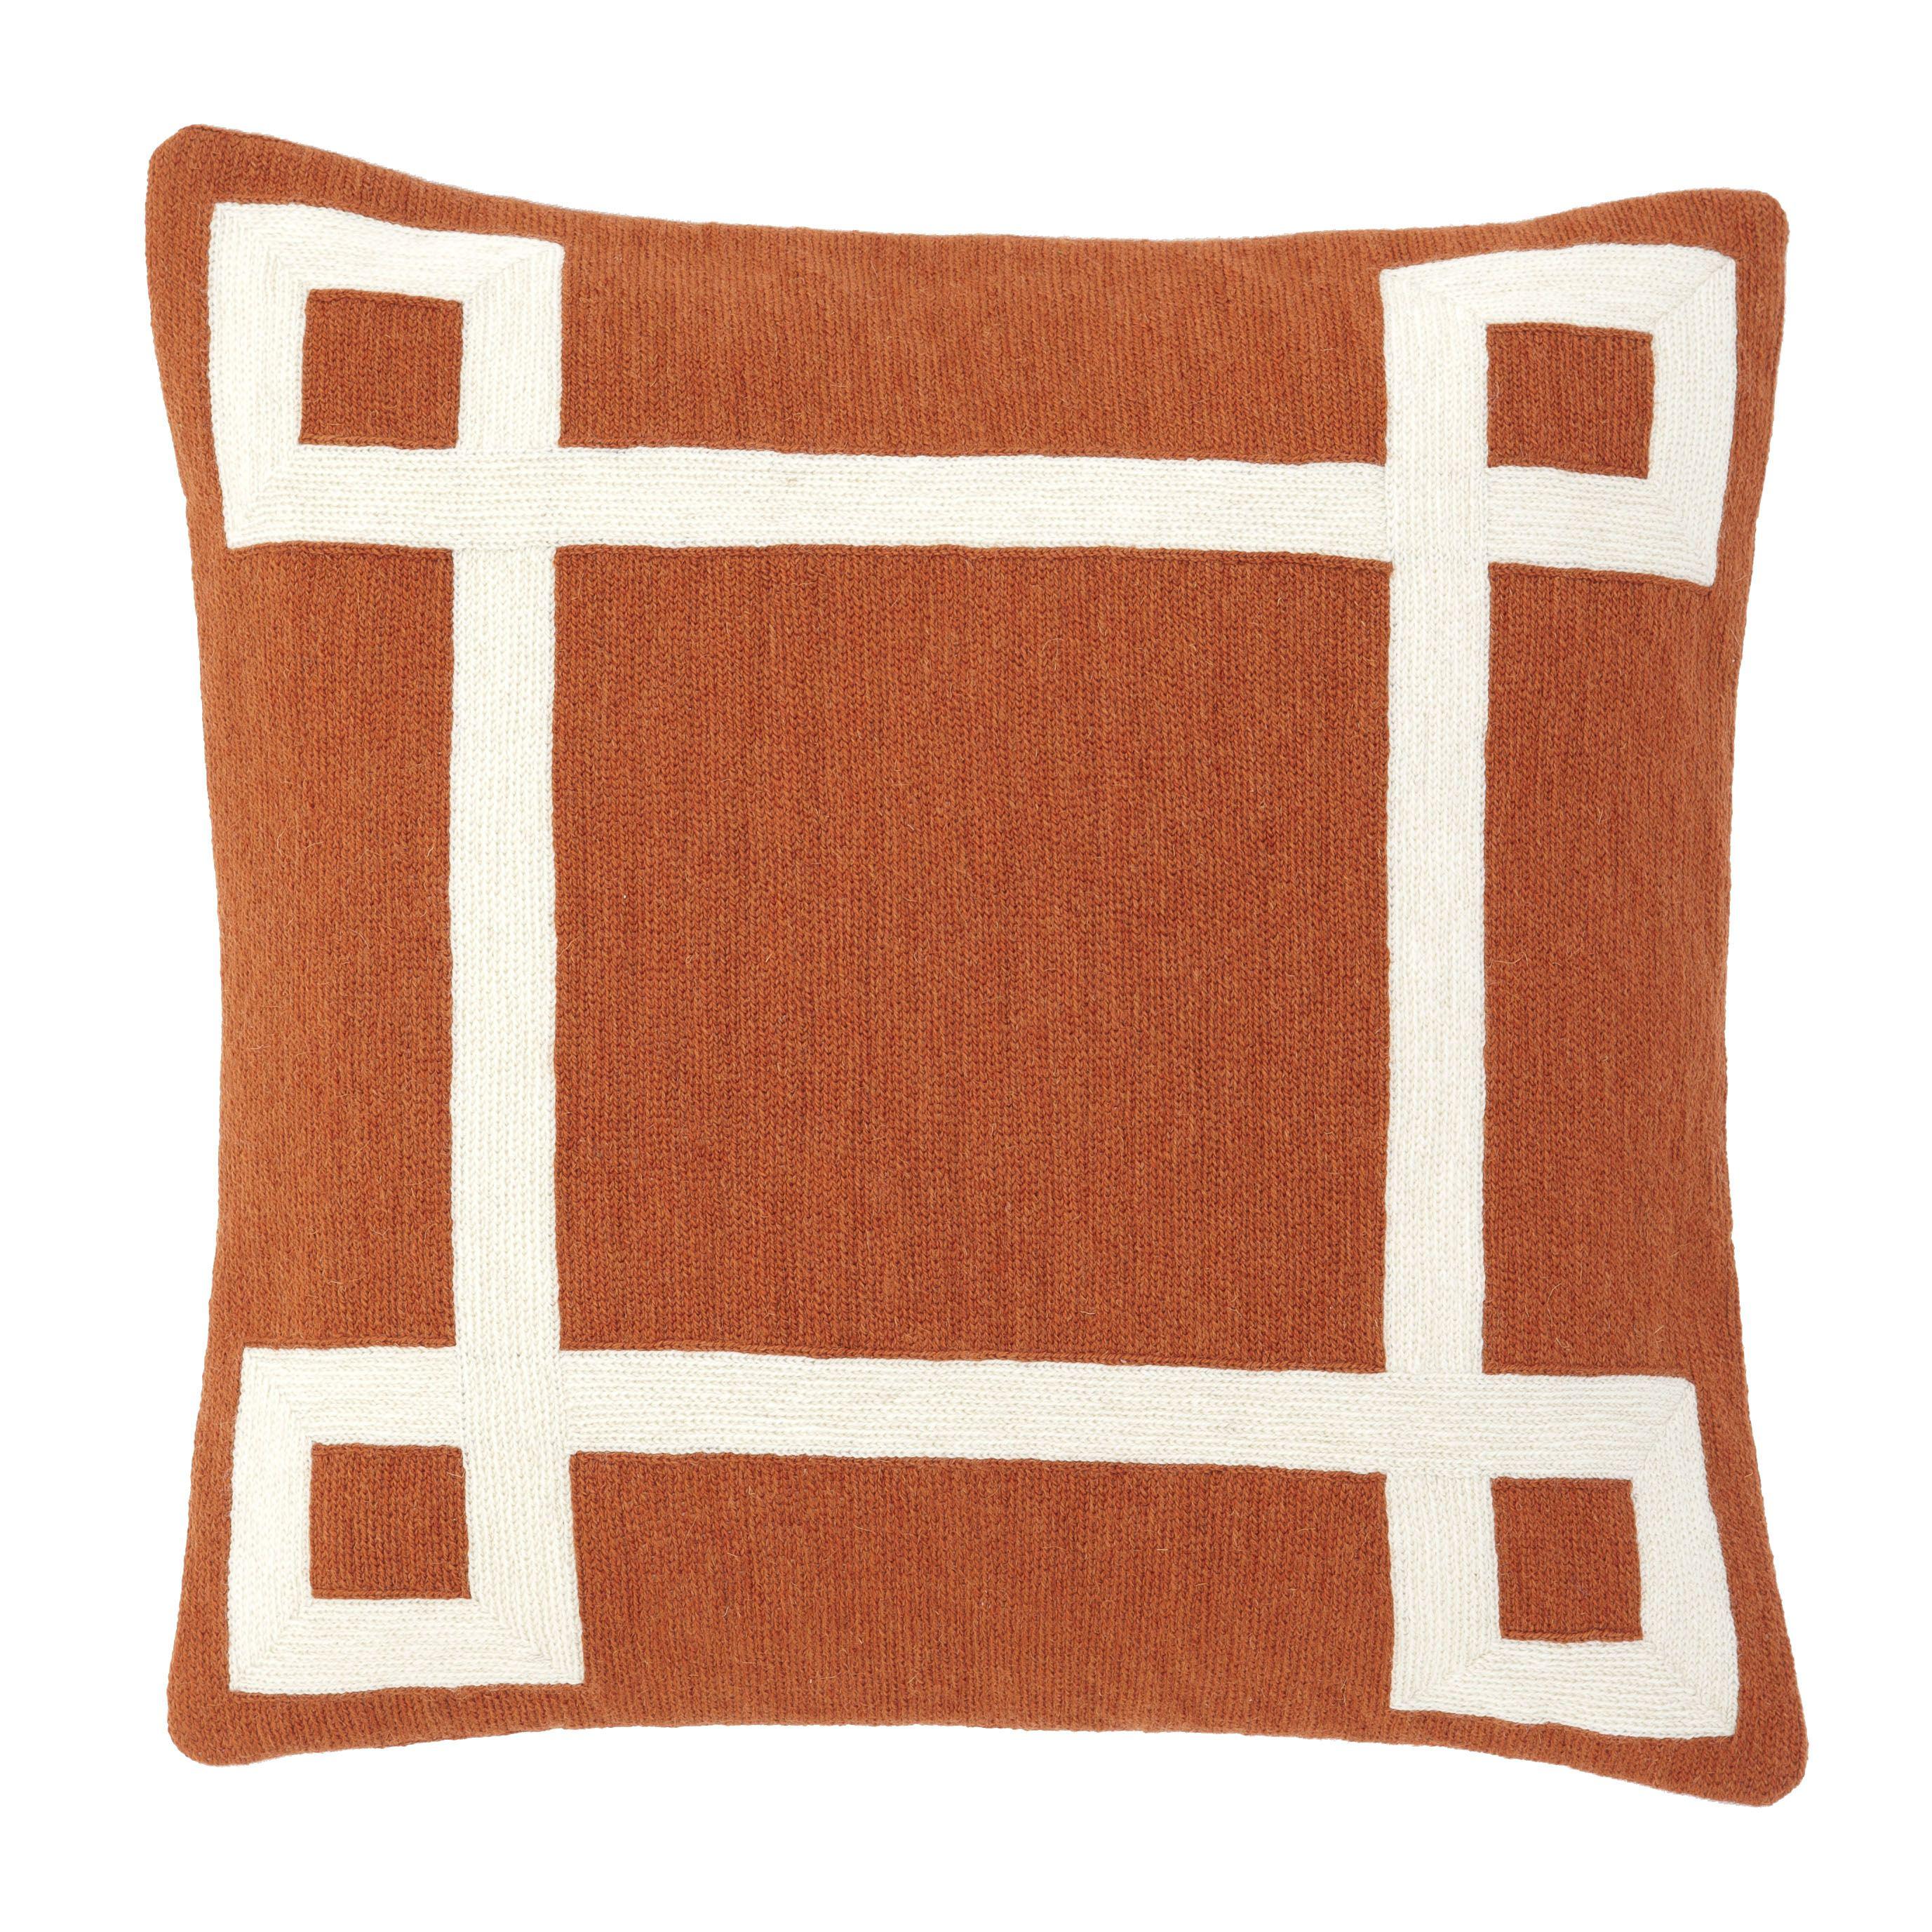 Купить Декоративная подушка Cushion Hartley в интернет-магазине roooms.ru